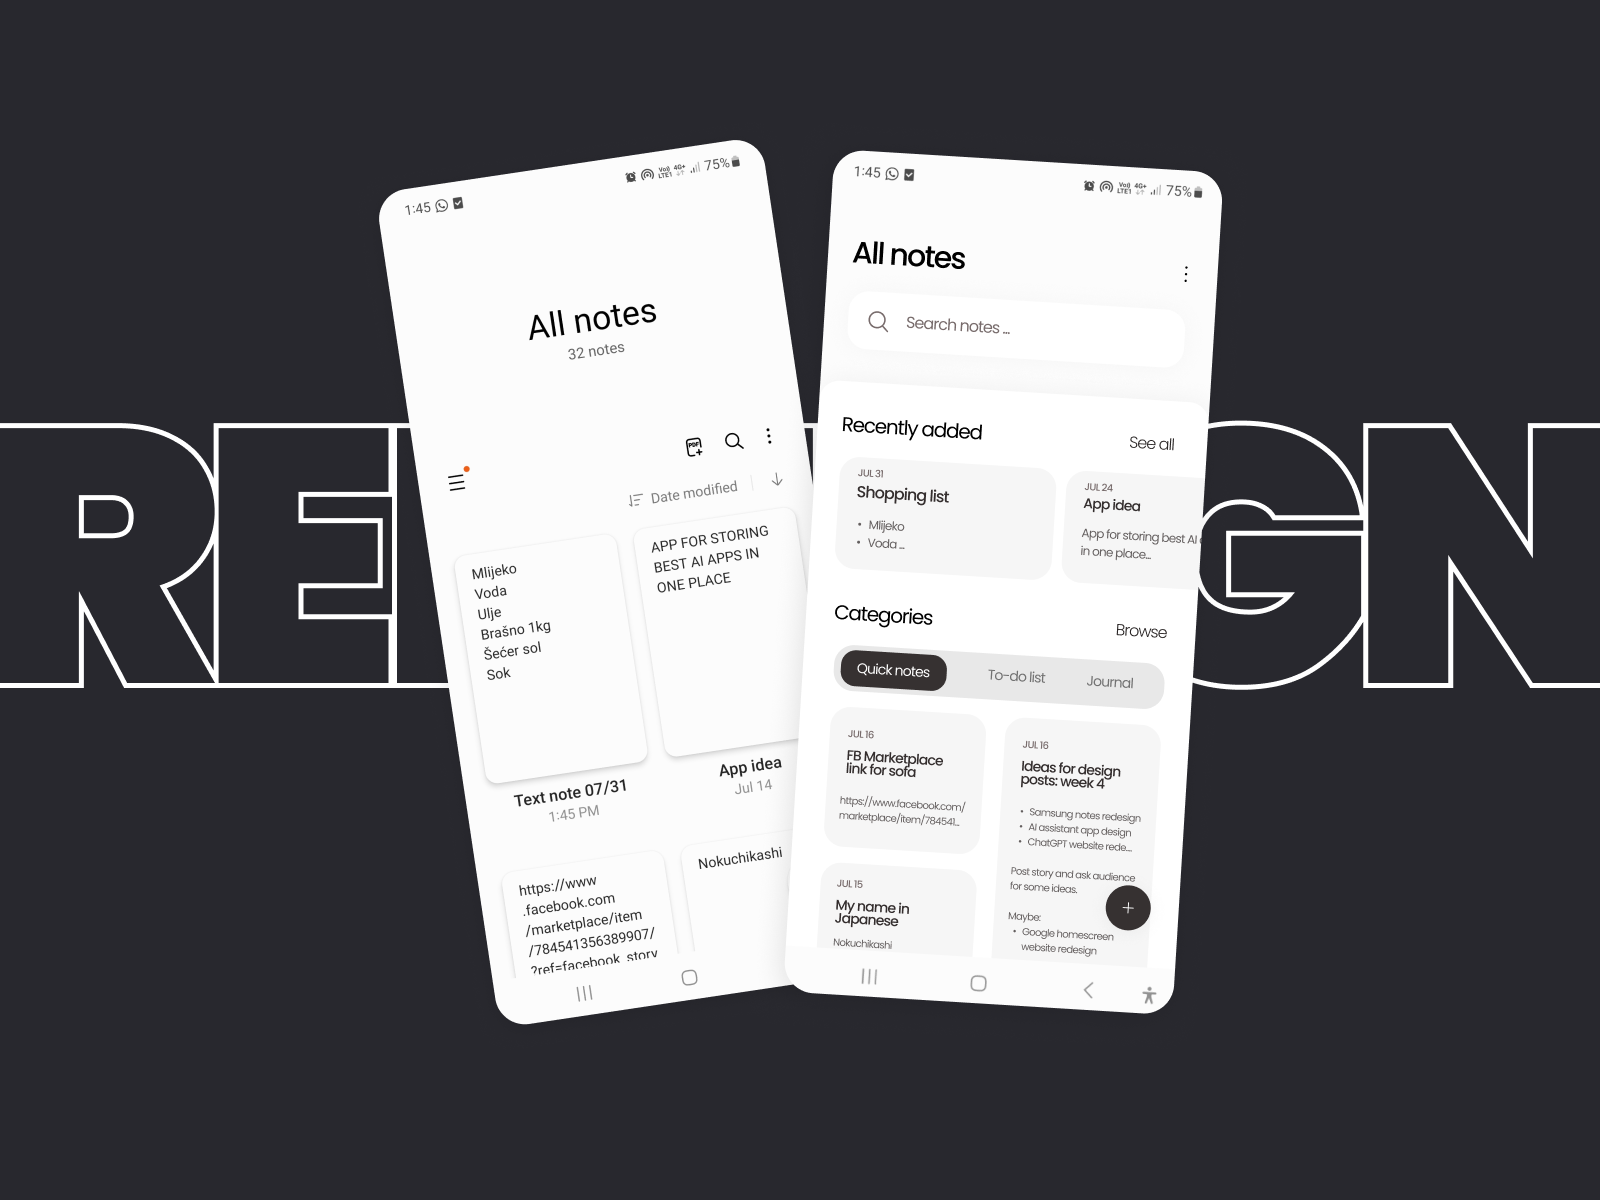 STEAM Website Redesign - Modern UI Design by Petar Kajba on Dribbble